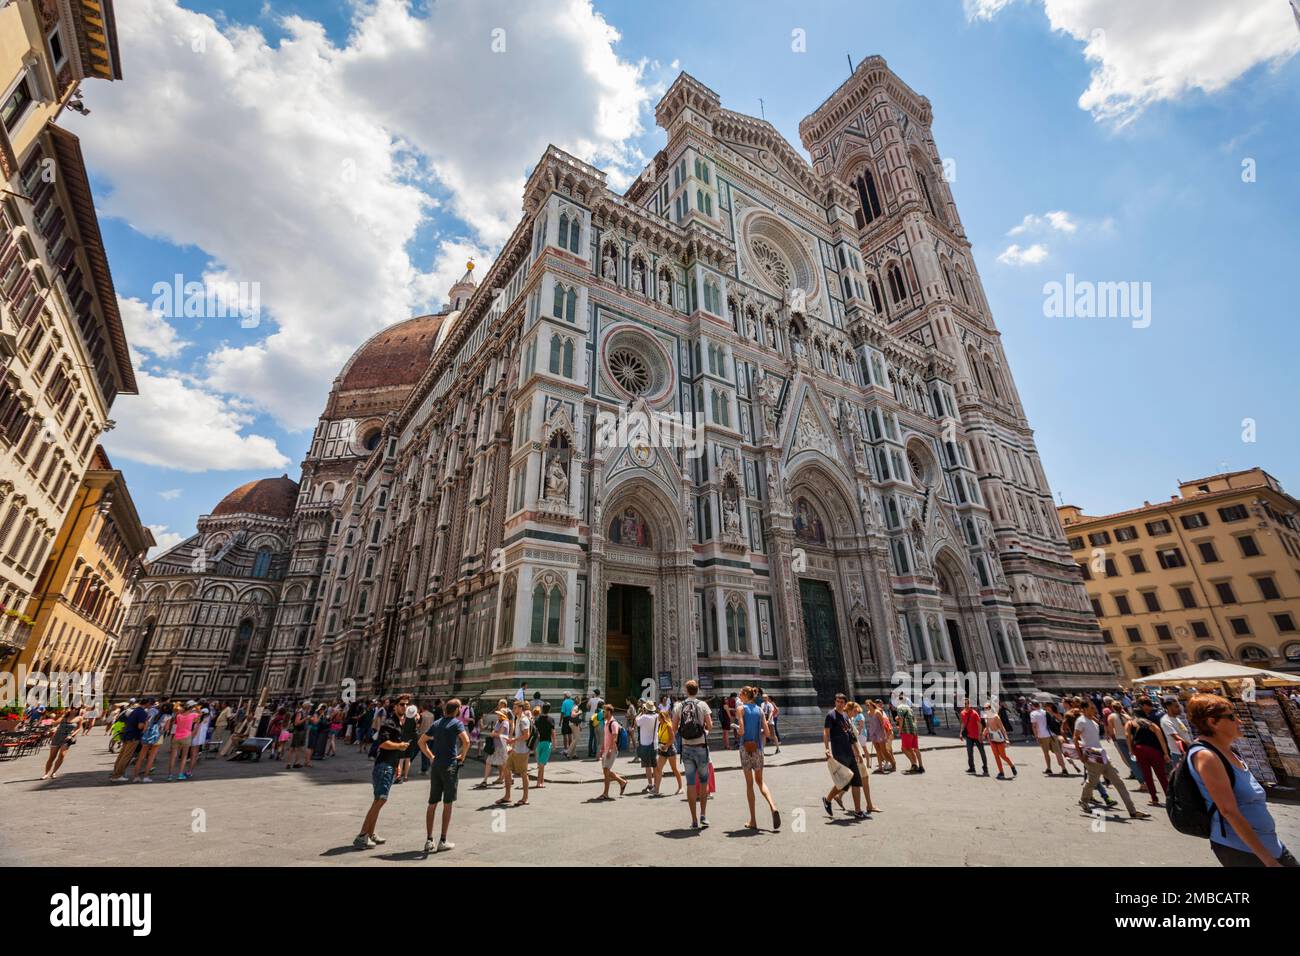 Doumo, Cattedrale di Santa Maria del Fiore, Florence, Italy Stock Photo